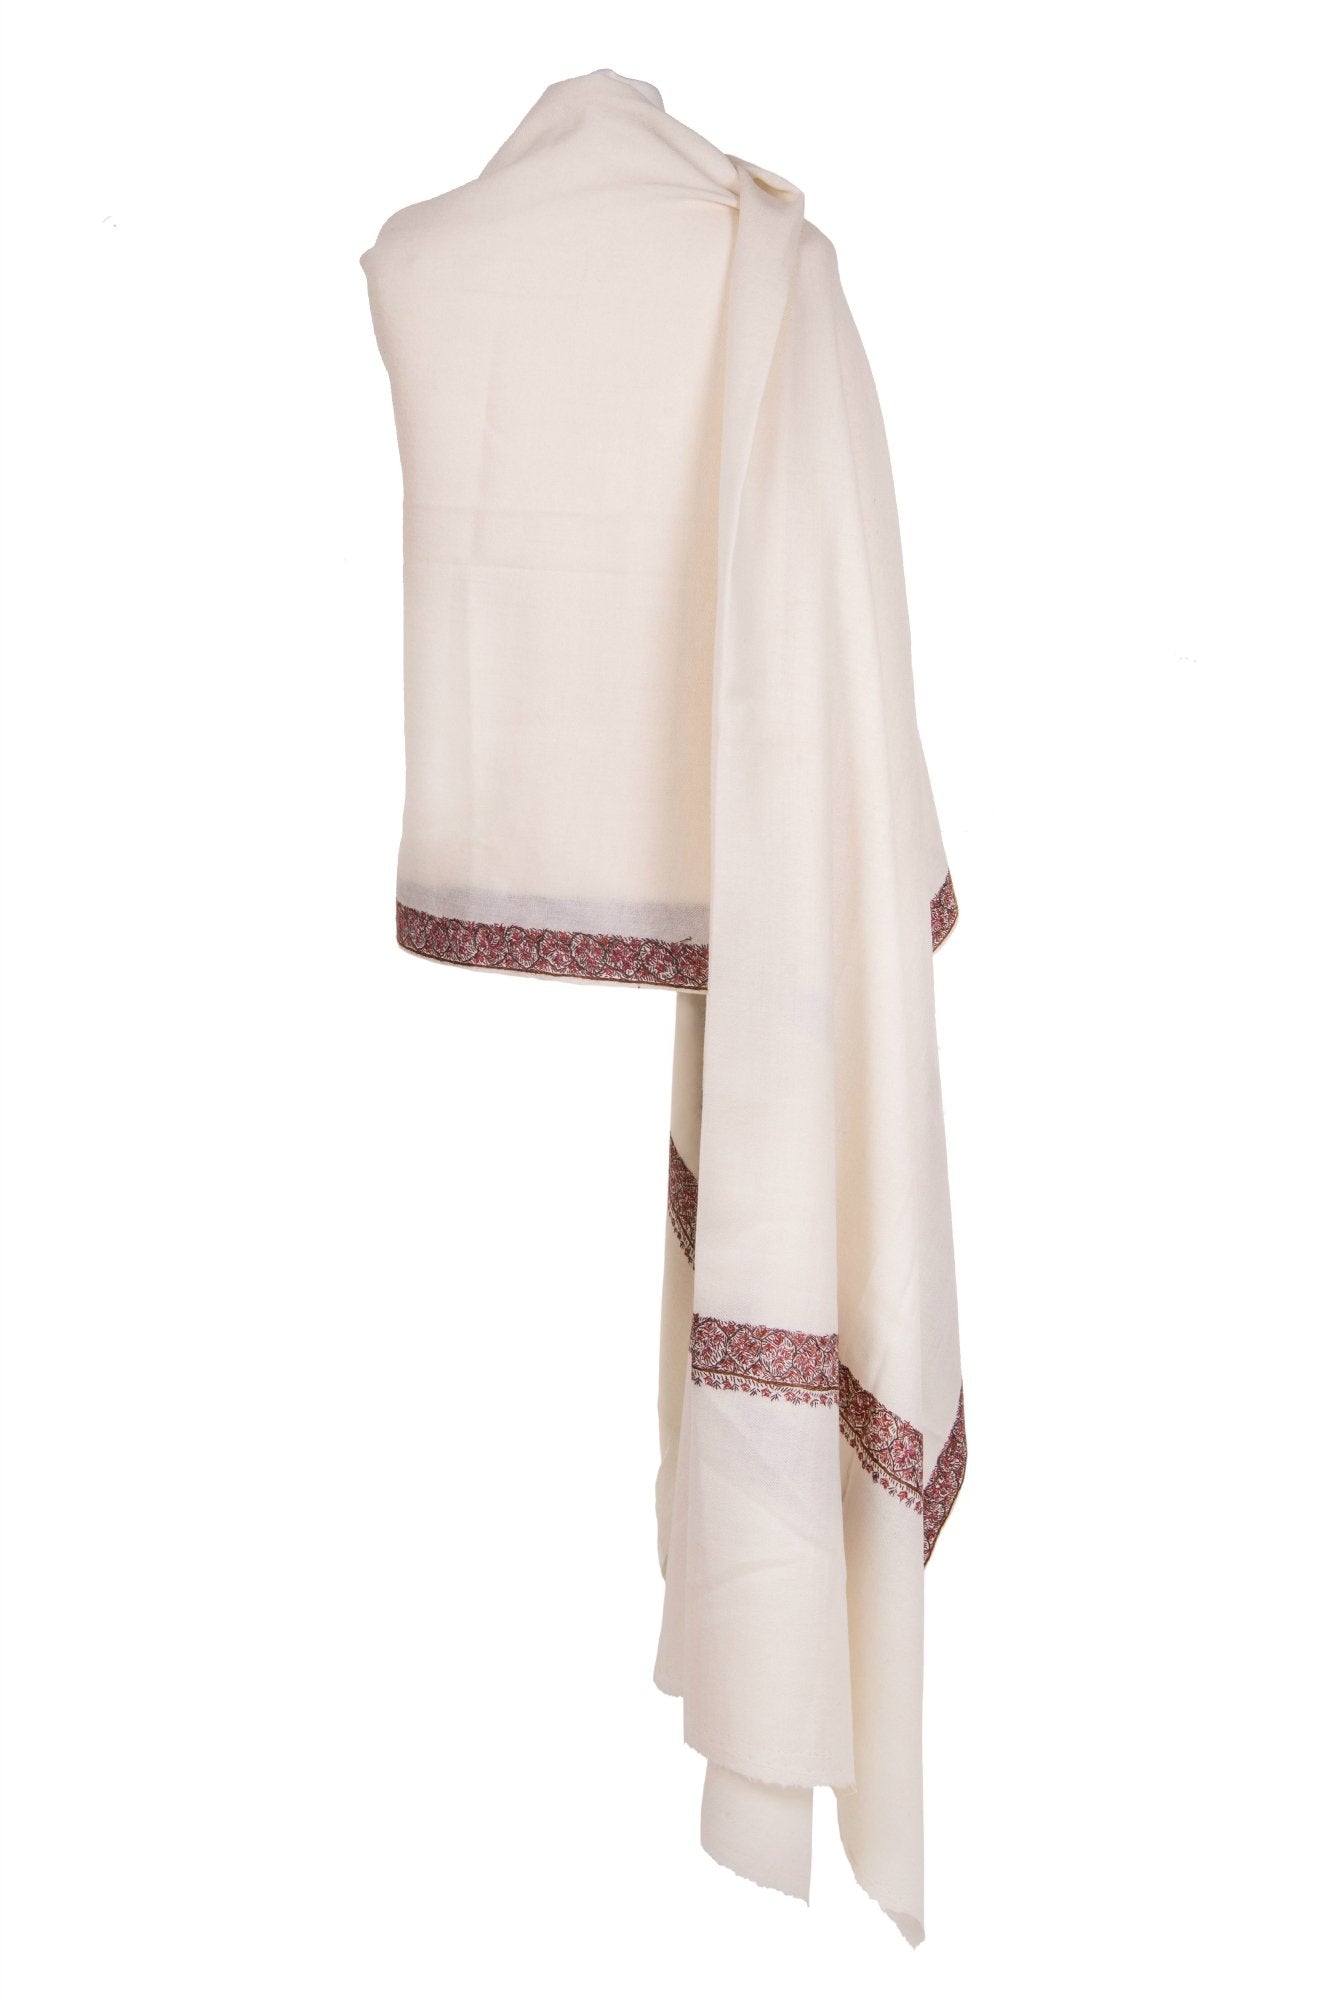 Kashmir Cream shawl